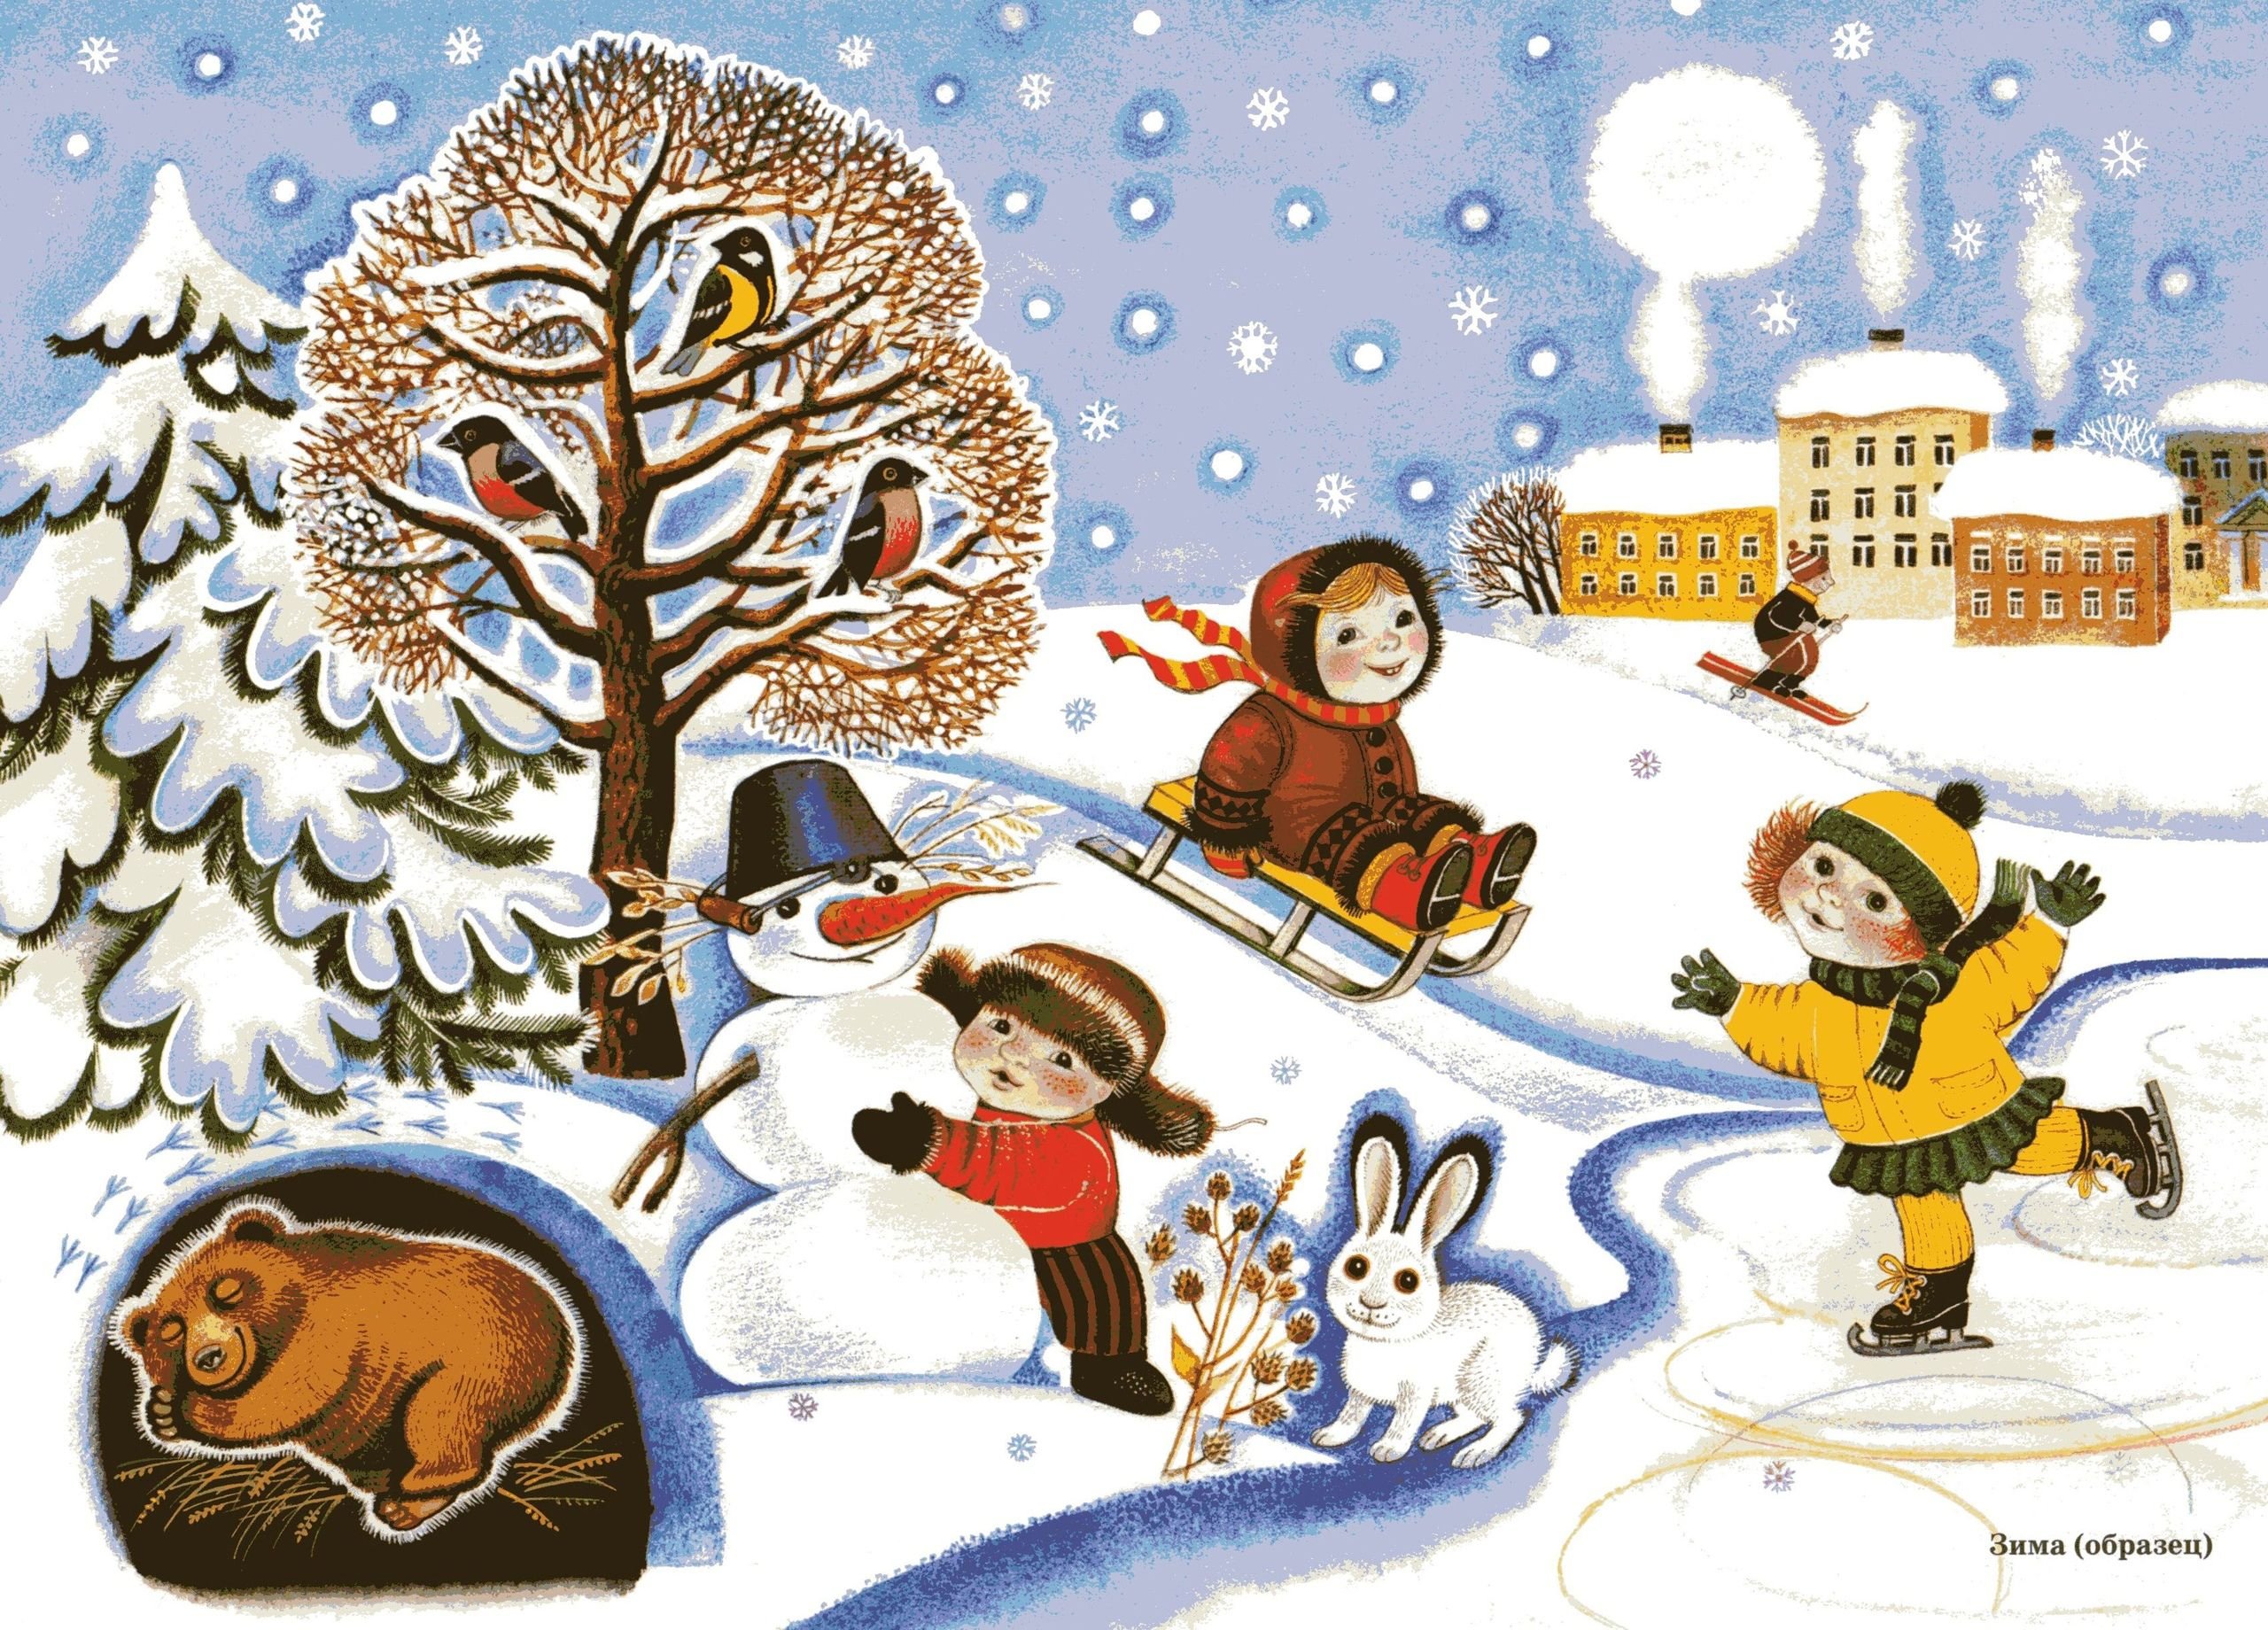 Картинка зимы для детей в детском саду. Зима для детей дошкольного возраста. О зиме детям дошкольникам. Иллюстрации зима для детского сада. Сюжетные картины для детей.